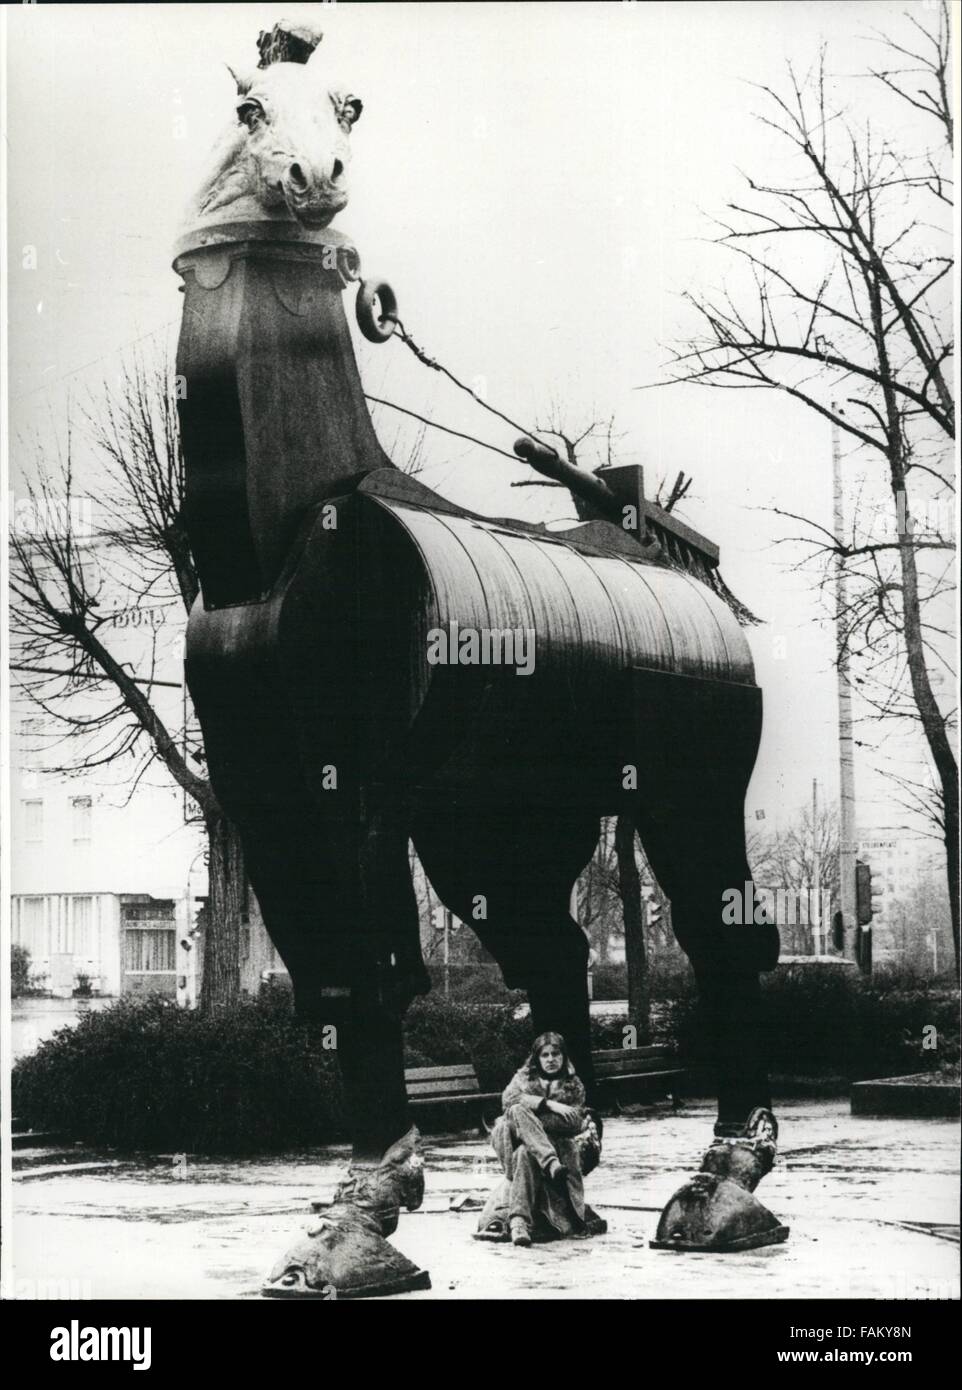 1981 - Exposición ''plástico policromada 1971-1981'' en Darmstadt/West-Germany (marzo 15th. -Abril 26-81): Este inmenso ''caballo de las Musas''.Fue construido en frente de la sala de arte en Darmstadt/Alemania Occidental. Este ans de seis metros de altura de cinco metros de ancho caballo es obra del escultor Jurgen Goertz (Jurgen Goertz - en esta foto en la parte inferior del caballo), cuya exposición ''policromadas 1971-1981, sigue siendo de plástico dura hasta abril 26th, 1981. Besidesm, en el salón de arte en Darmstadt, 50 esculturas y relieves de plástico (parcialmente con otros materiales) puede ser visto. Tras esta exposición el gigna Foto de stock